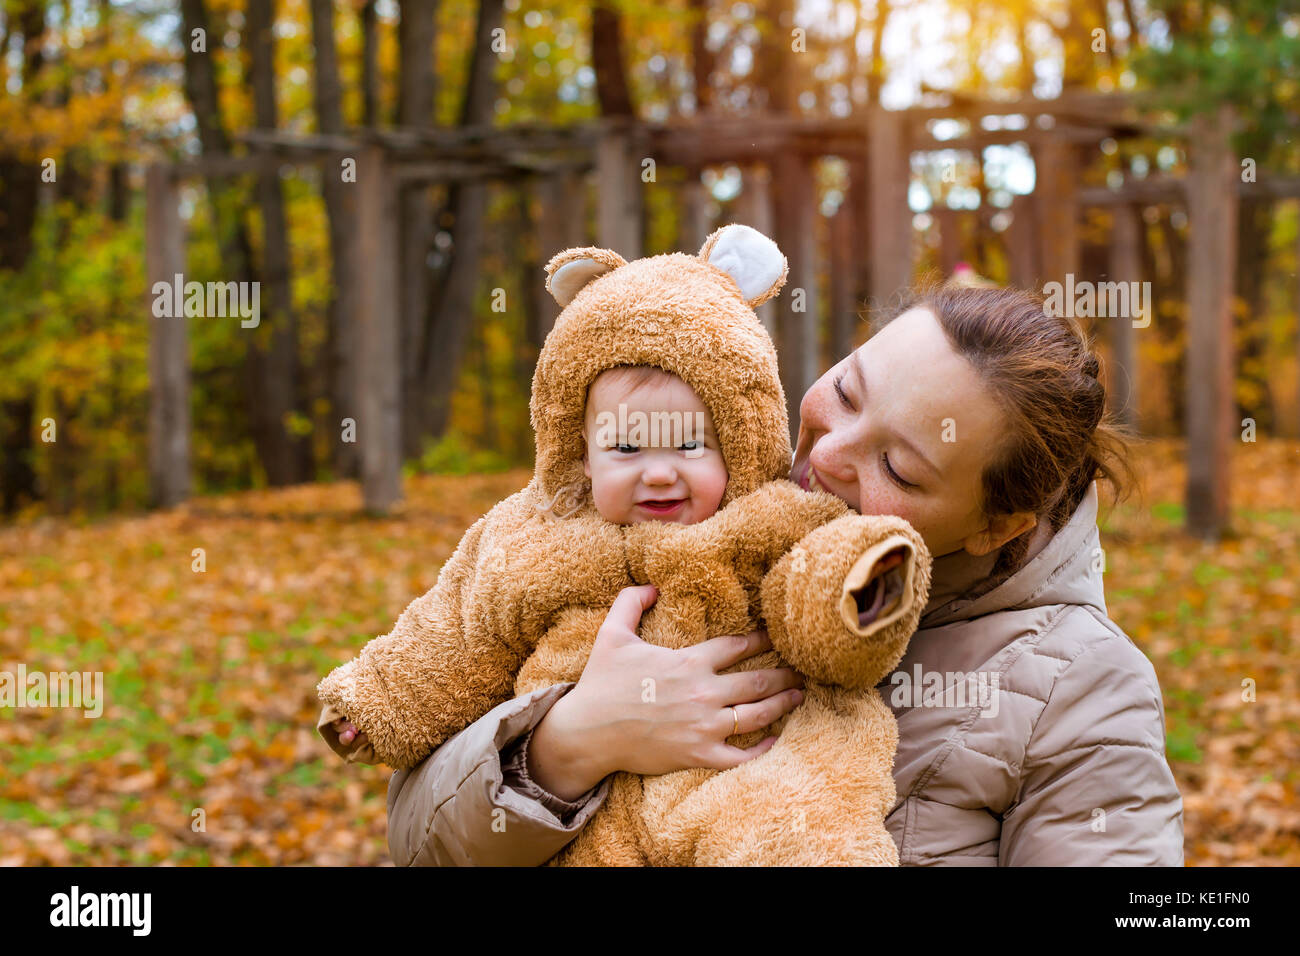 Frau mit Baby in den Armen, auf dem Hintergrund der Herbst Park posieren. Kind gekleidet in warmen stilisierte Teddy - Bär Kostüm, Spaß am Arm der Mutter. Familie w Stockfoto